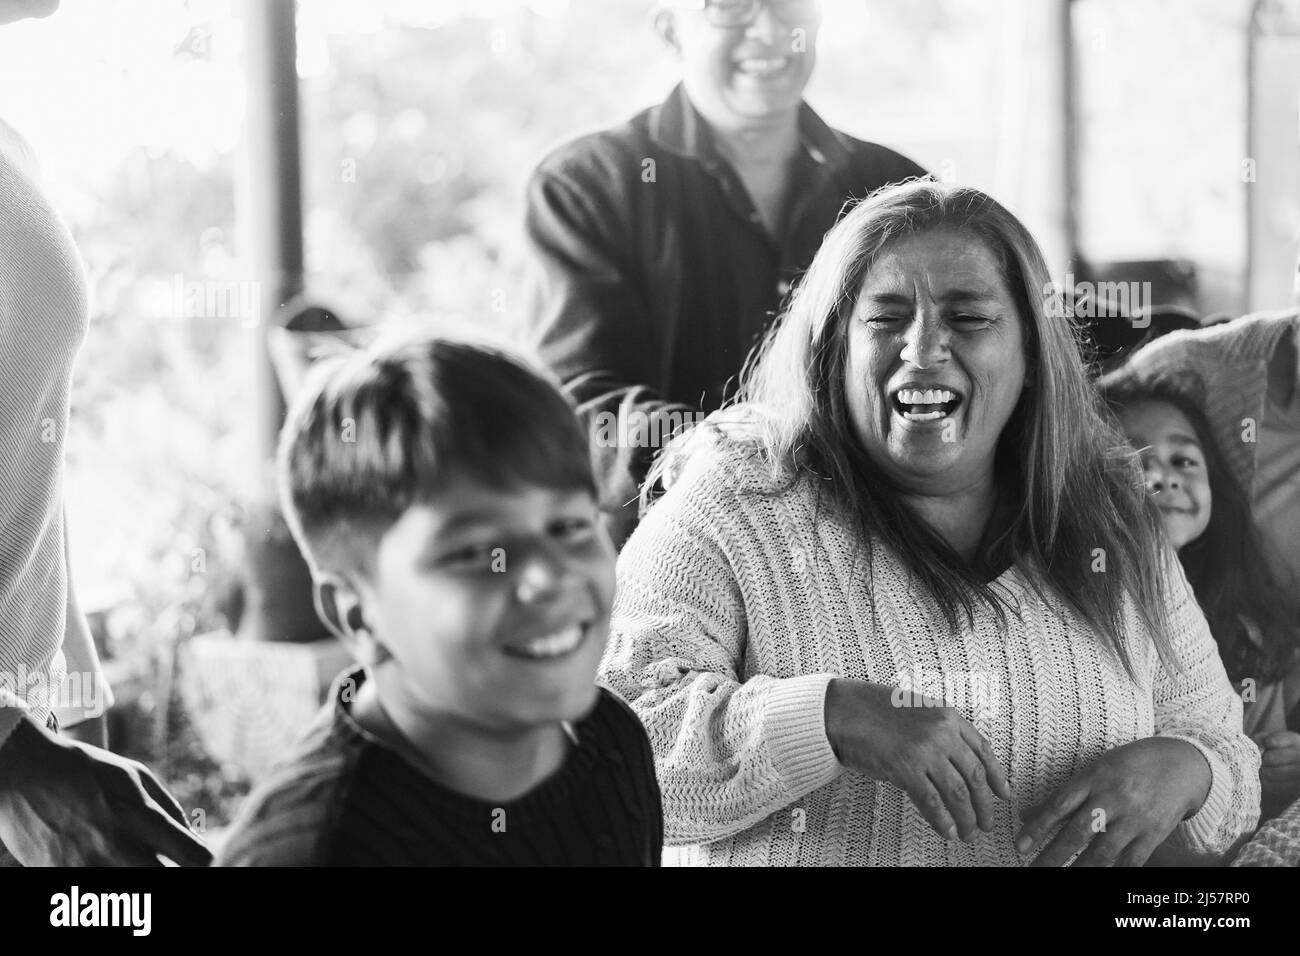 Happy latin Familie Spaß zu Hause haben - Soft Focus Großmutter Gesicht - Schwarz-Weiß-Schnitt Stockfoto